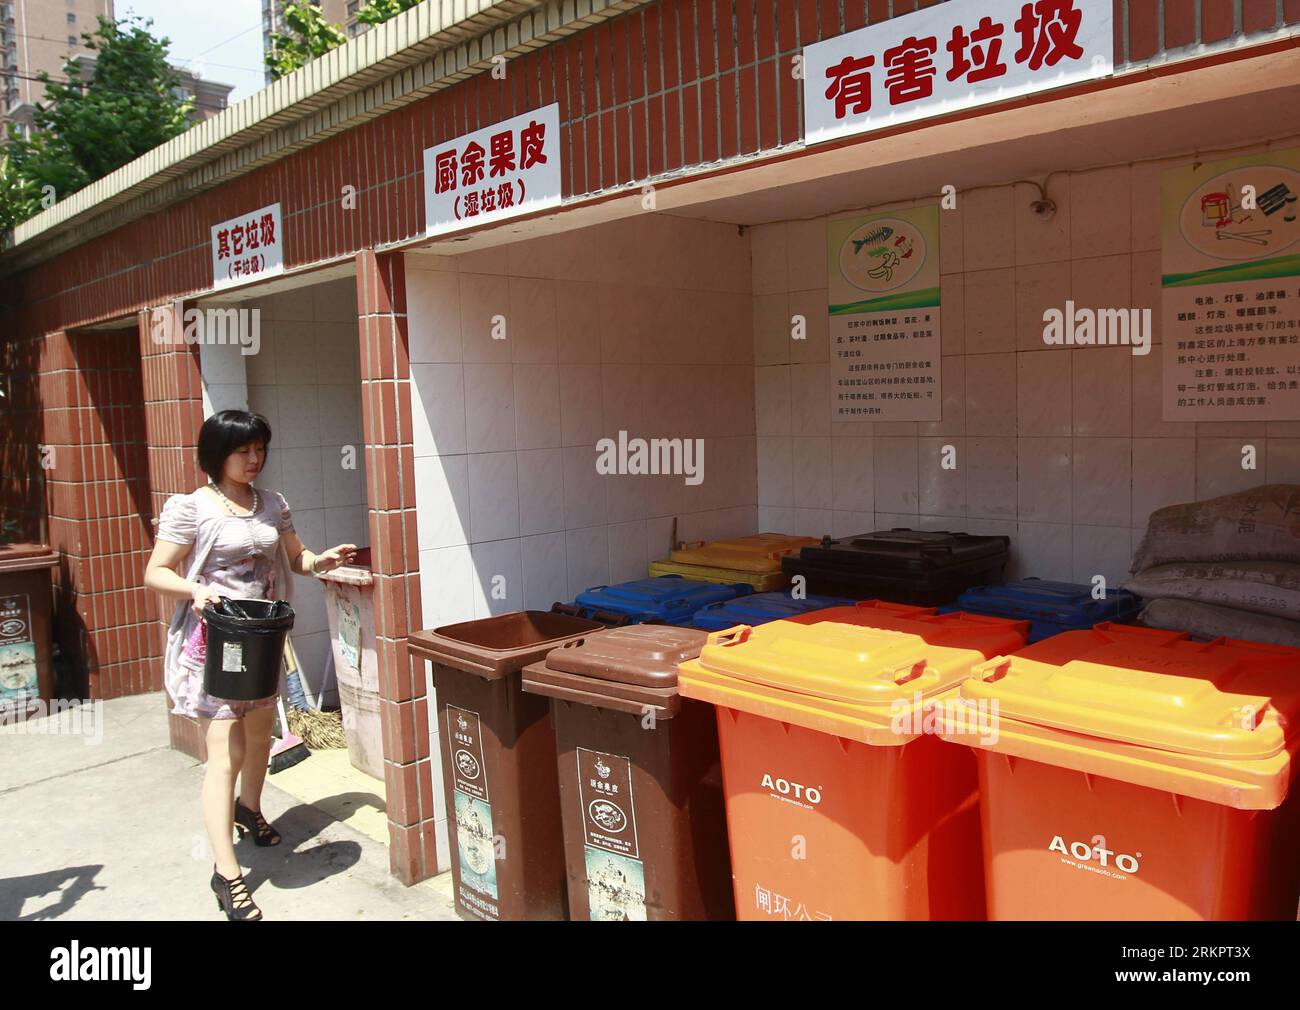 Bildnummer: 58051566 Datum: 31.05.2012 Copyright: imago/Xinhua (120531) -- SHANGHAI, 31 maggio 2012 (Xinhua) -- Un residente getta rifiuti in un sito di smistamento dei rifiuti nella comunità Yangbo nel distretto di Zhabei della Cina orientale a Shanghai, 31 maggio 2012. La comunità di Yangbo è uno dei pionieri nella smistamento dei rifiuti tra le comunità di Shanghai. I residenti delle comunità dividono i rifiuti in nove categorie, tra cui pellicole asciutte, umide, di plastica, di abbigliamento usato, farmaci scaduti. (Xinhua/Pei Xin) (llp) CHINA-SHANGHAI-COMMUNITY-WASTE SORTING (CN) PUBLICATIONxNOTxINxCHN Gesellschaft Müll Müllwirtschaft Müllt Foto Stock